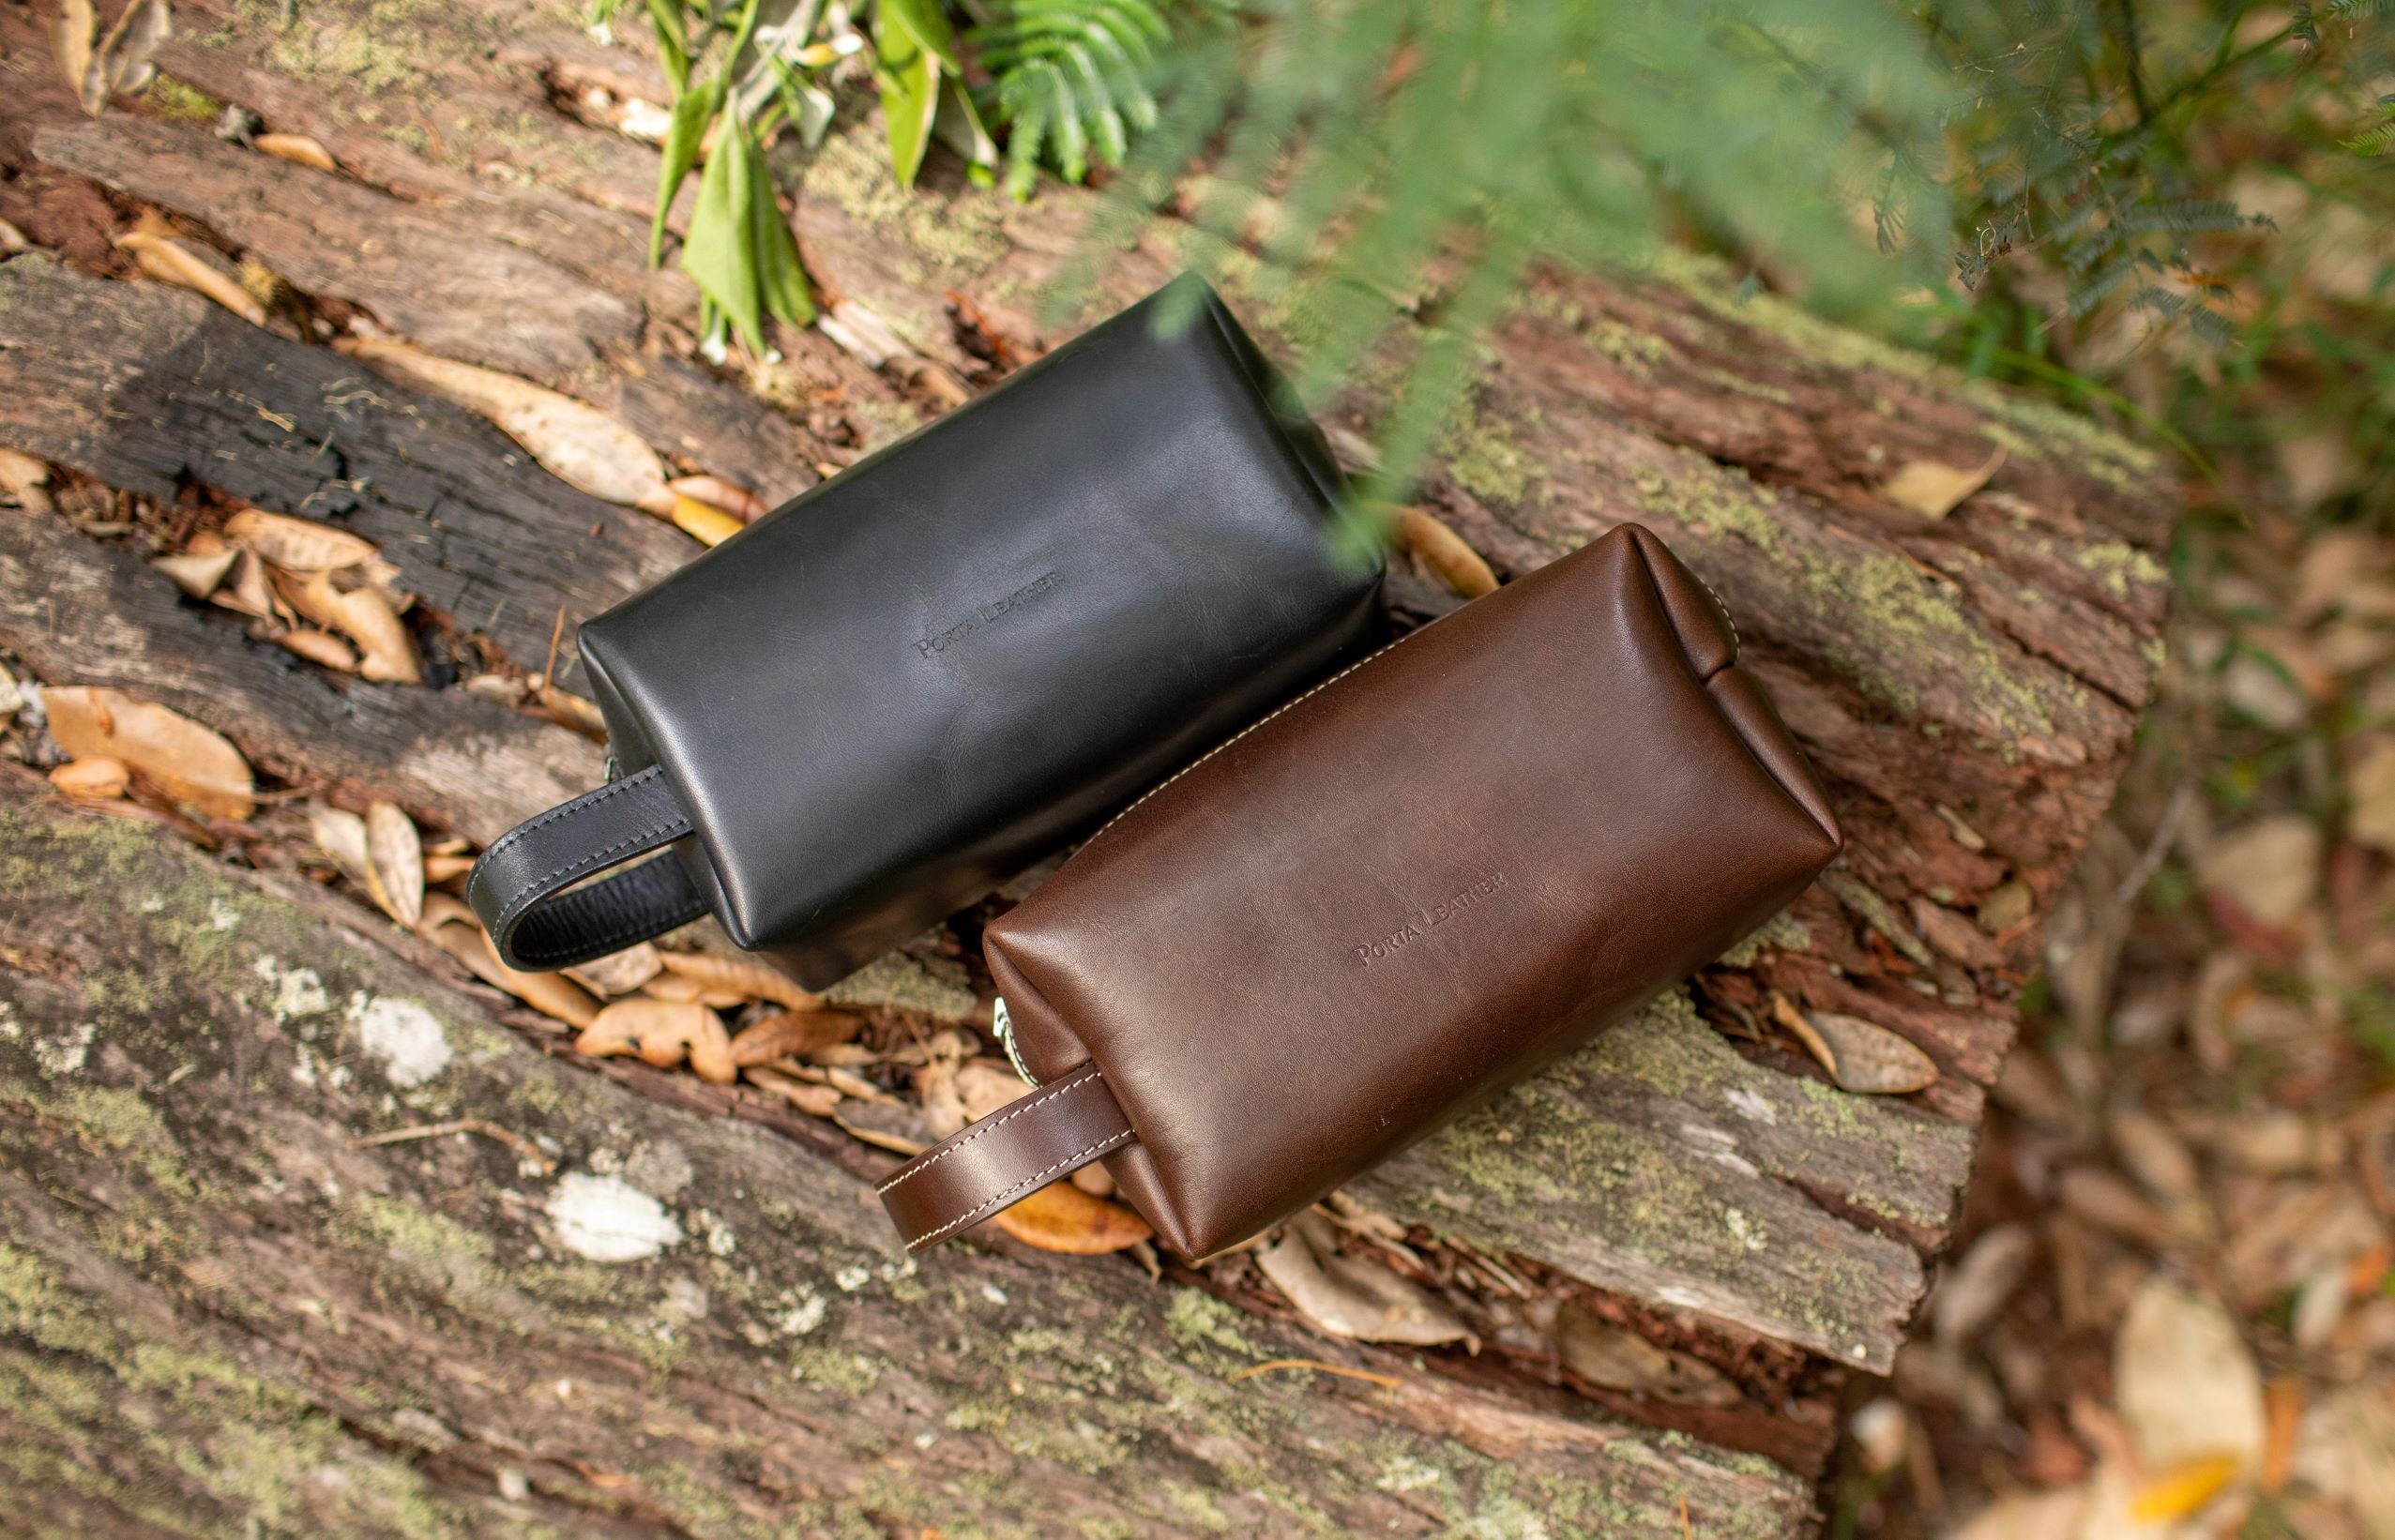 Porta Leather bovine dopp kit in black and brown on log 